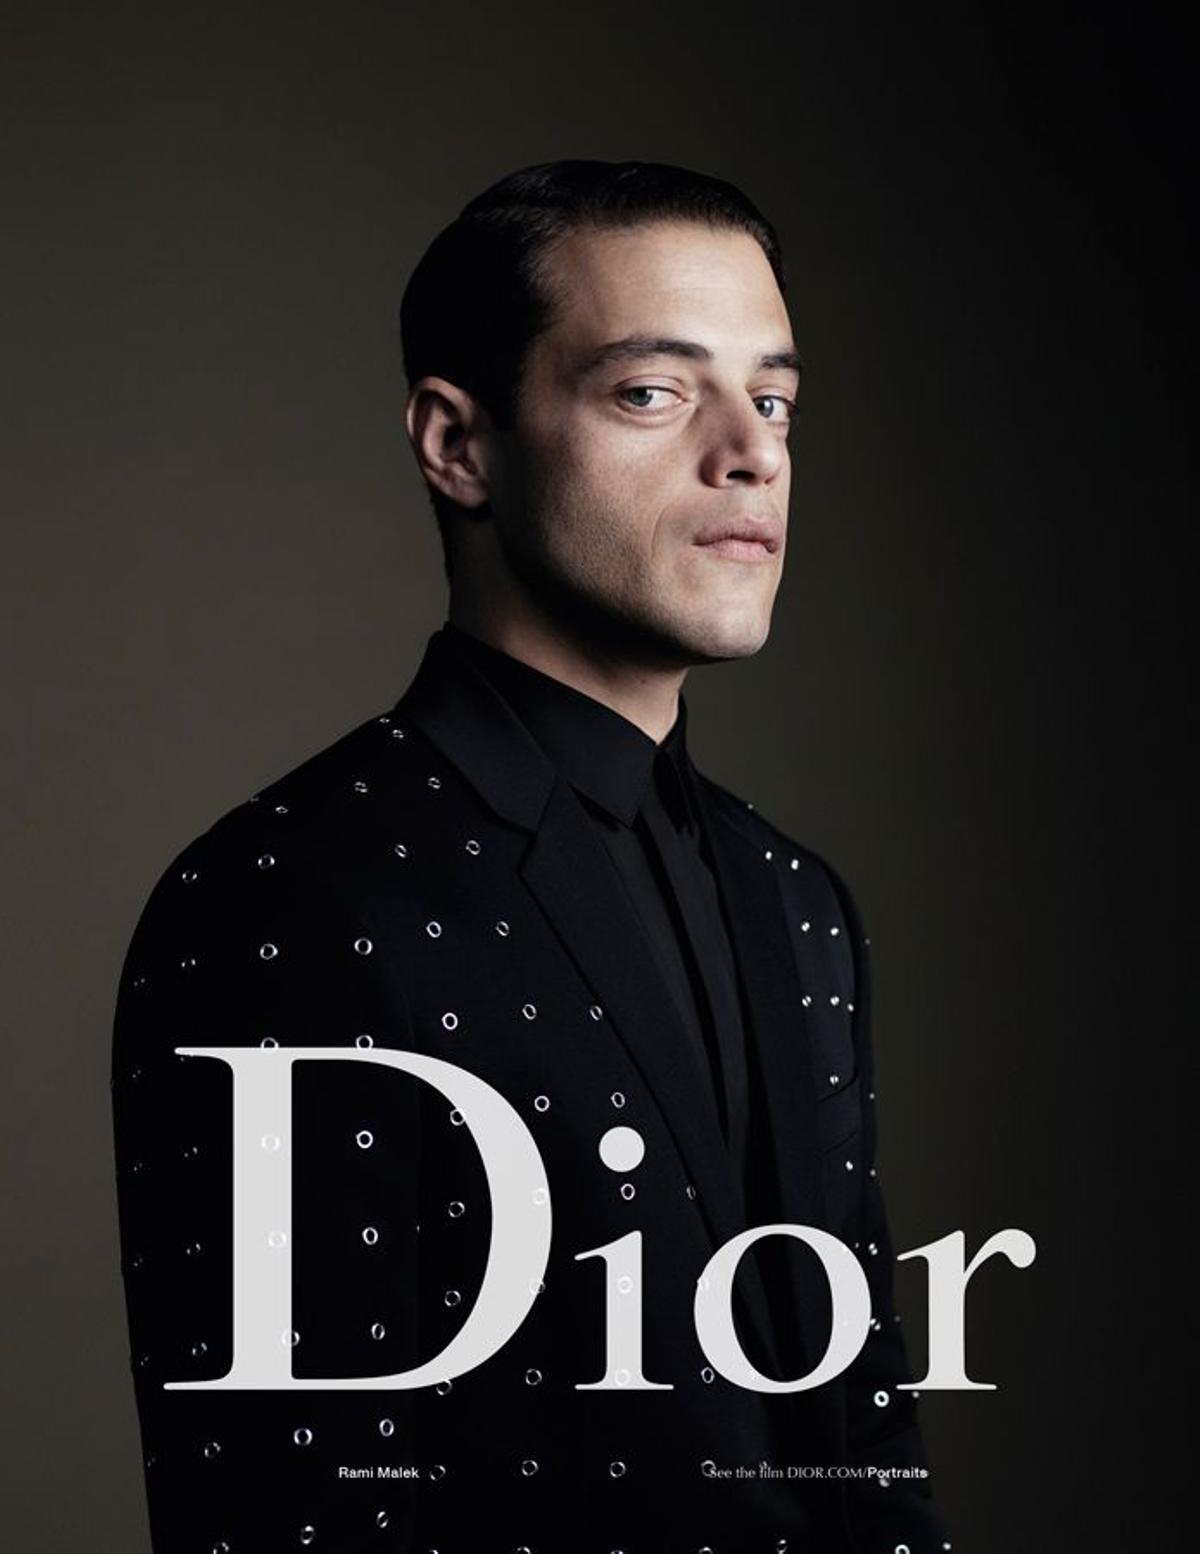 Dior Homme: Rami Malek